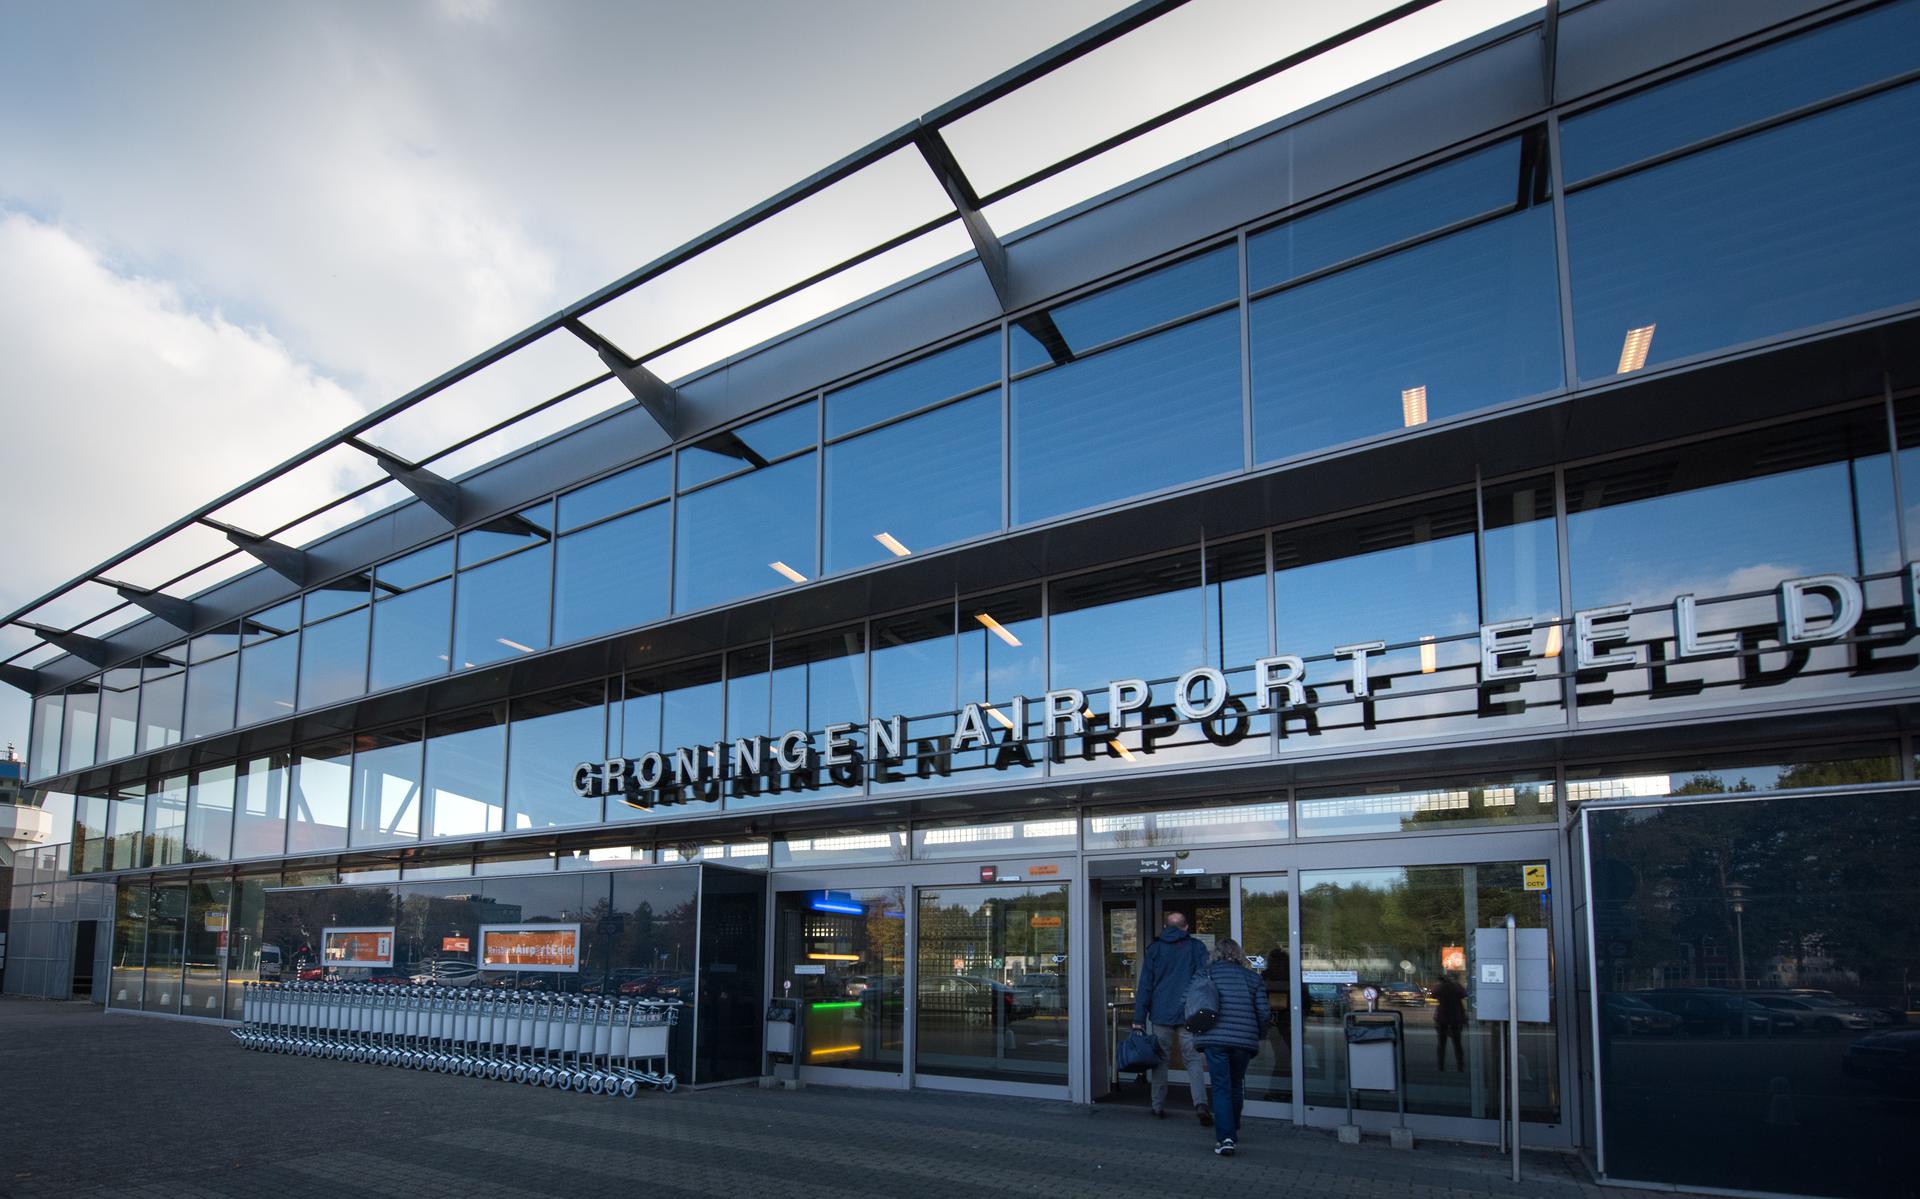 Gedeputeerde Nelleke Vedelaar wil voor komende zomer een realistisch toekomstscenario voor de noordelijke luchthaven.